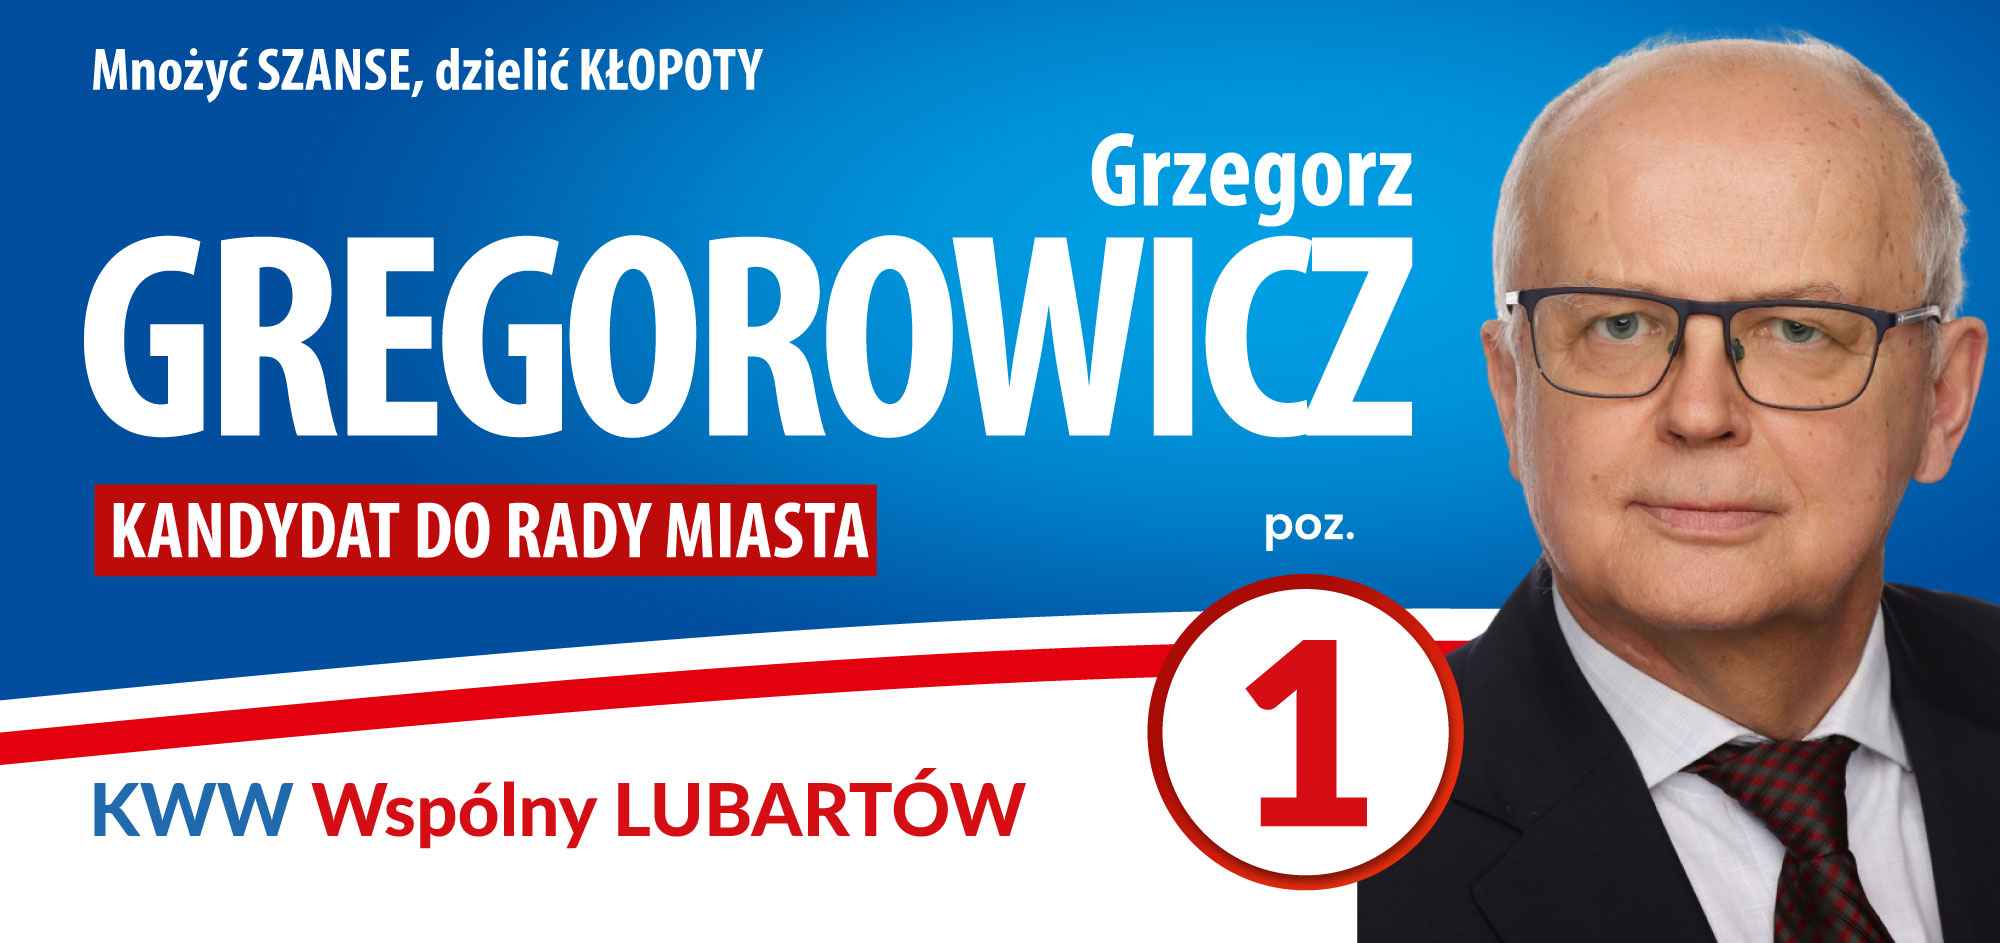 GREGOROWICZ_Grzegorz-1